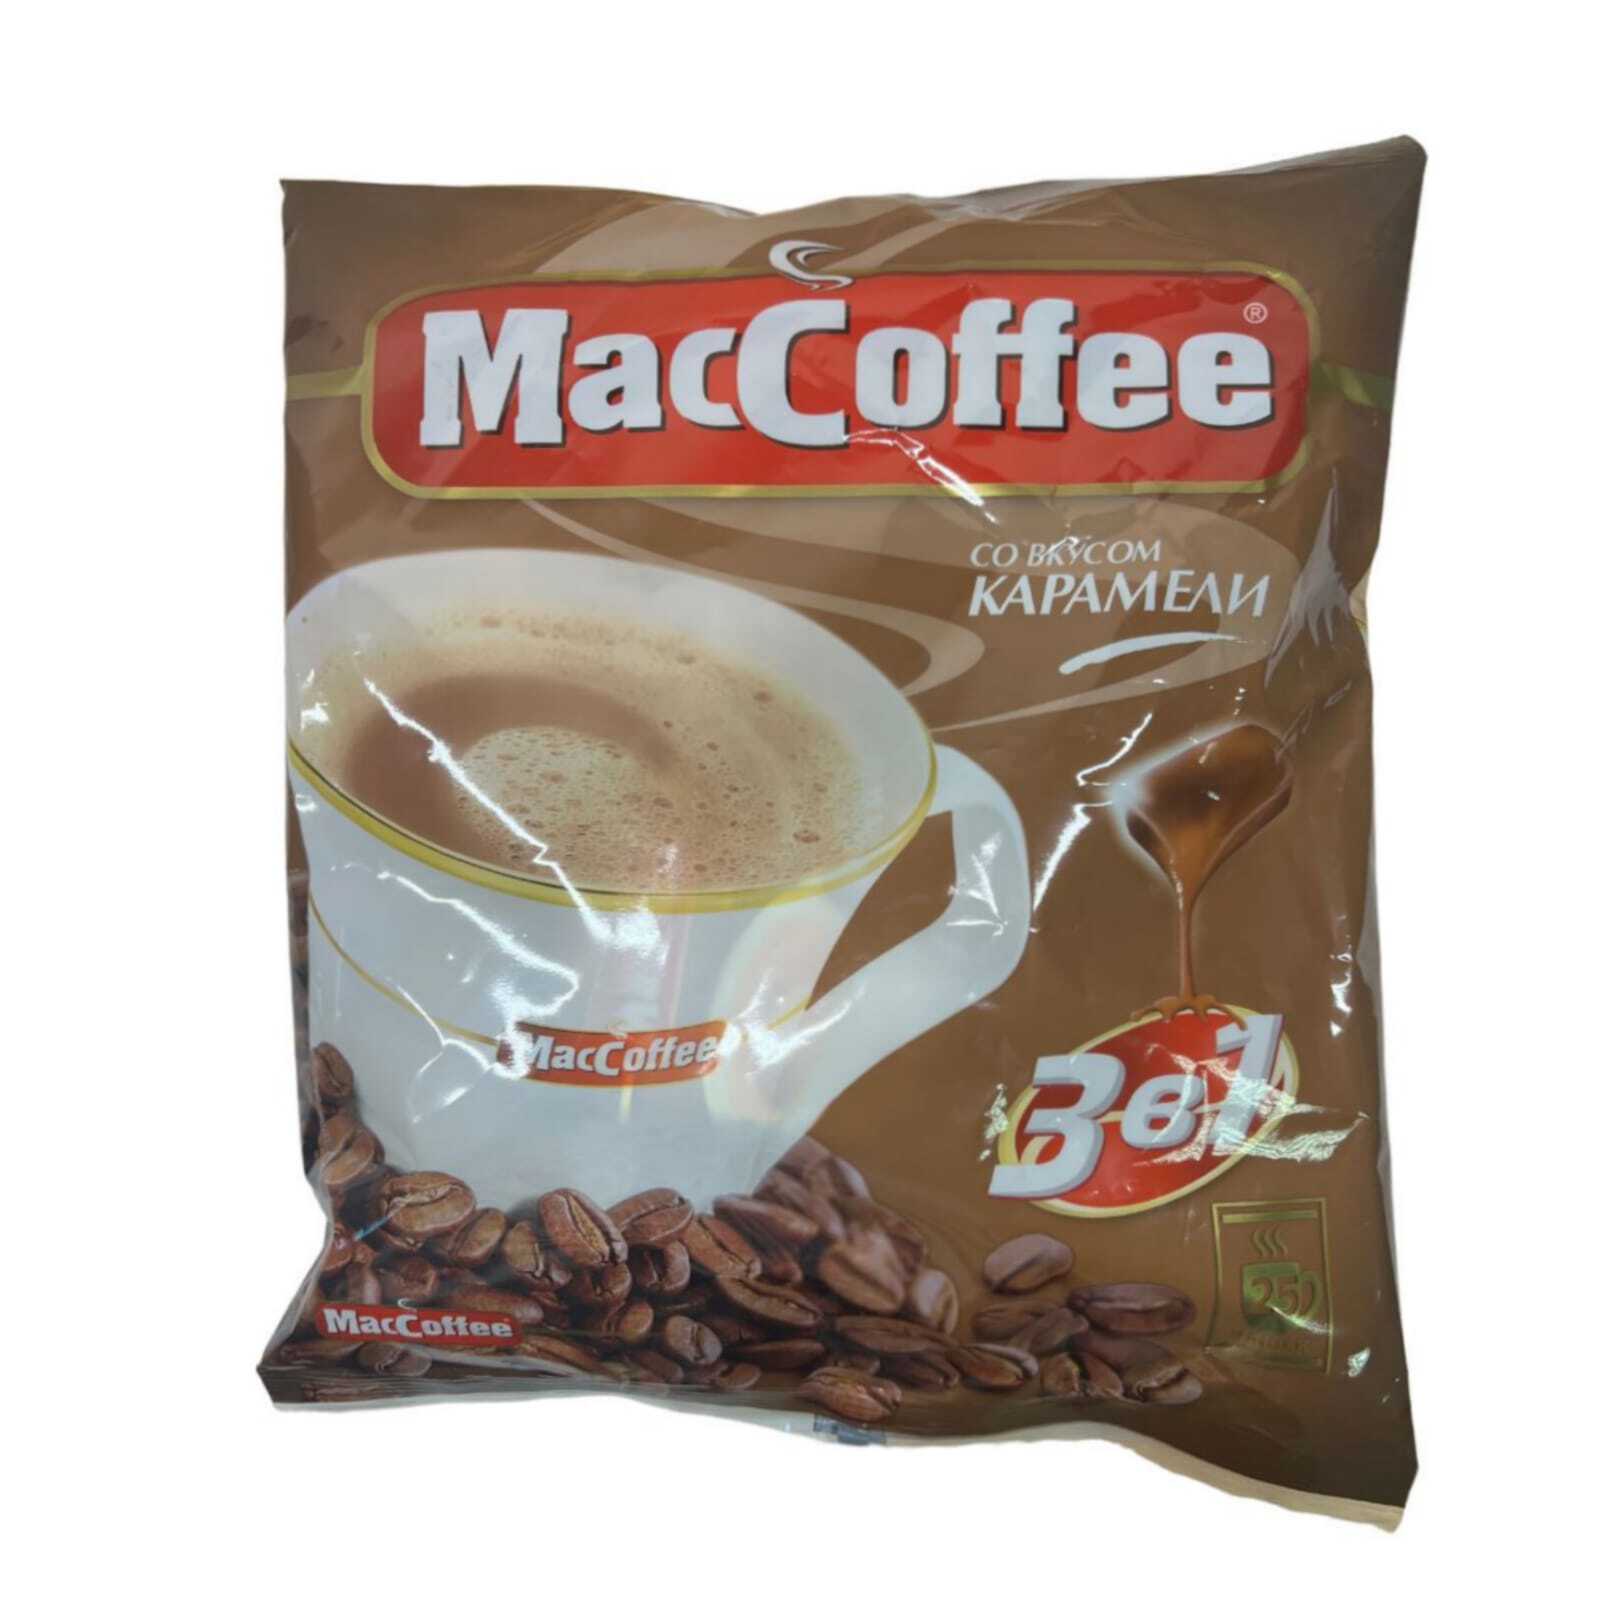 Маккофе 3 в 1. Кофе растворимый Маккофе. MACCOFFEE карамель (3в1) кофейный напиток 18г*25*20. Кофе 3 в 1 Маккофе.